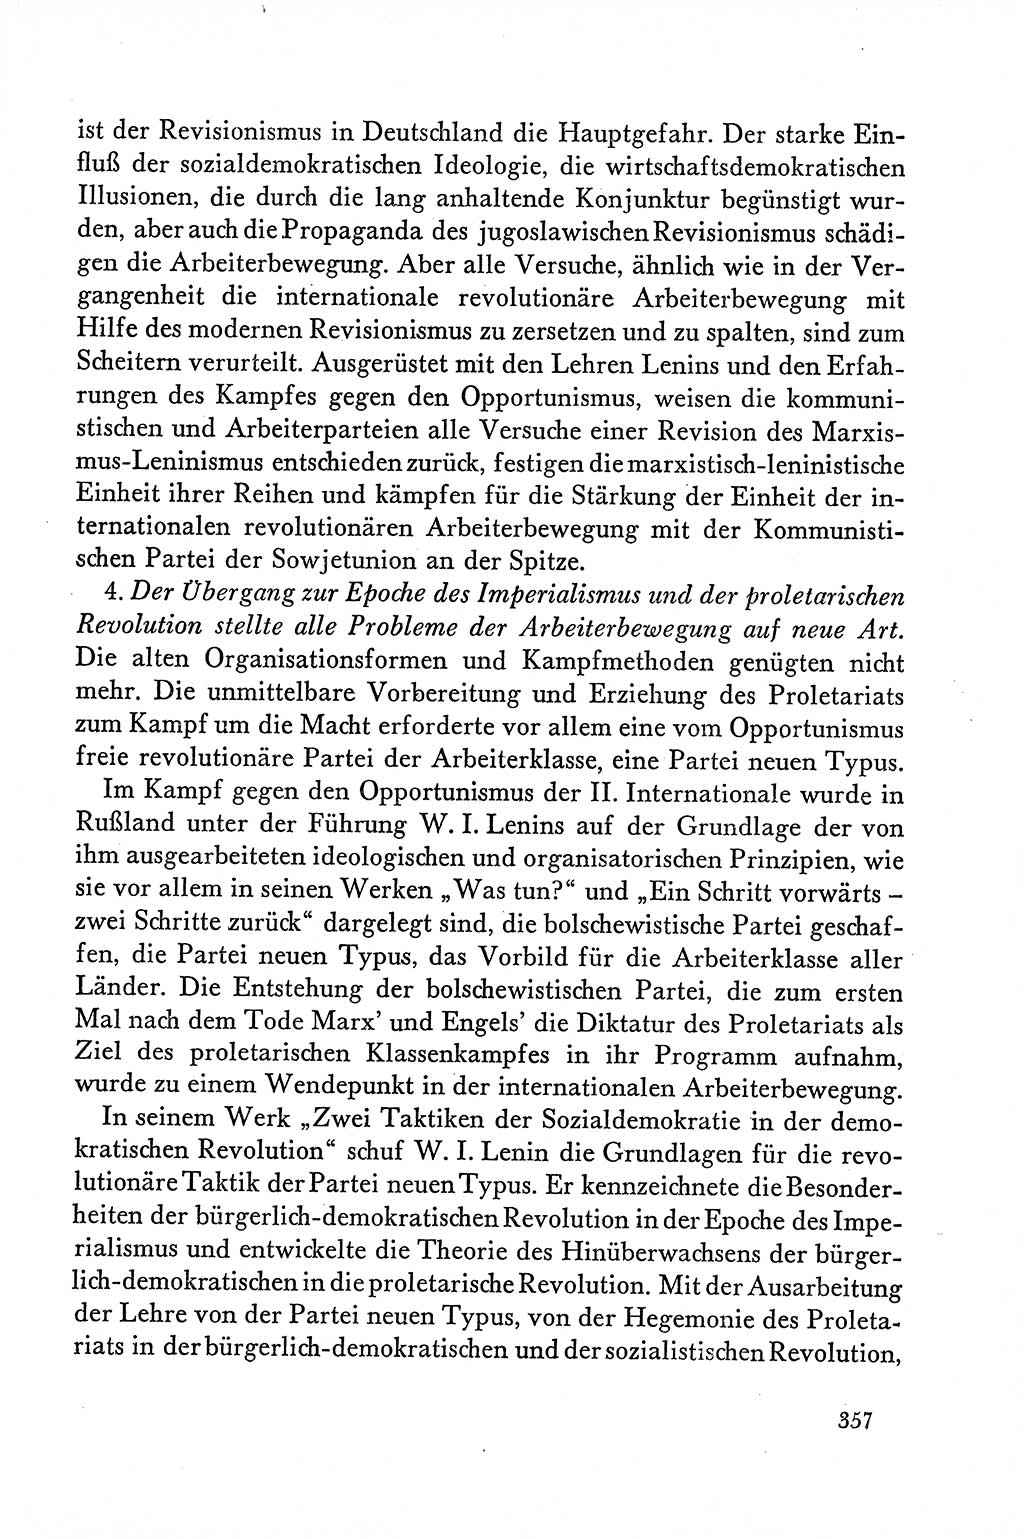 Dokumente der Sozialistischen Einheitspartei Deutschlands (SED) [Deutsche Demokratische Republik (DDR)] 1958-1959, Seite 357 (Dok. SED DDR 1958-1959, S. 357)